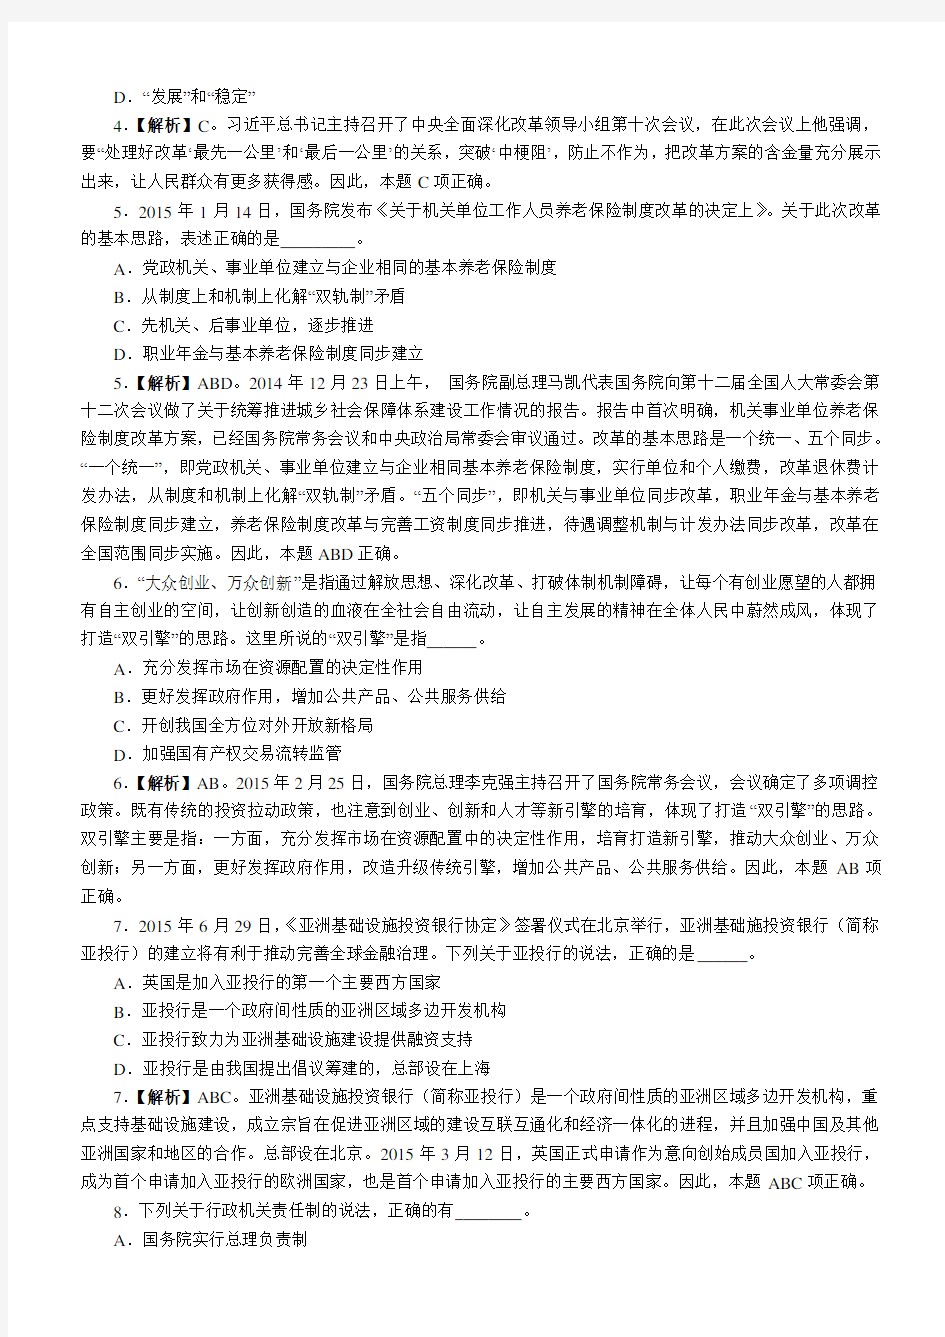 2016年上海公务员考试行测真题及答案解析(B卷)